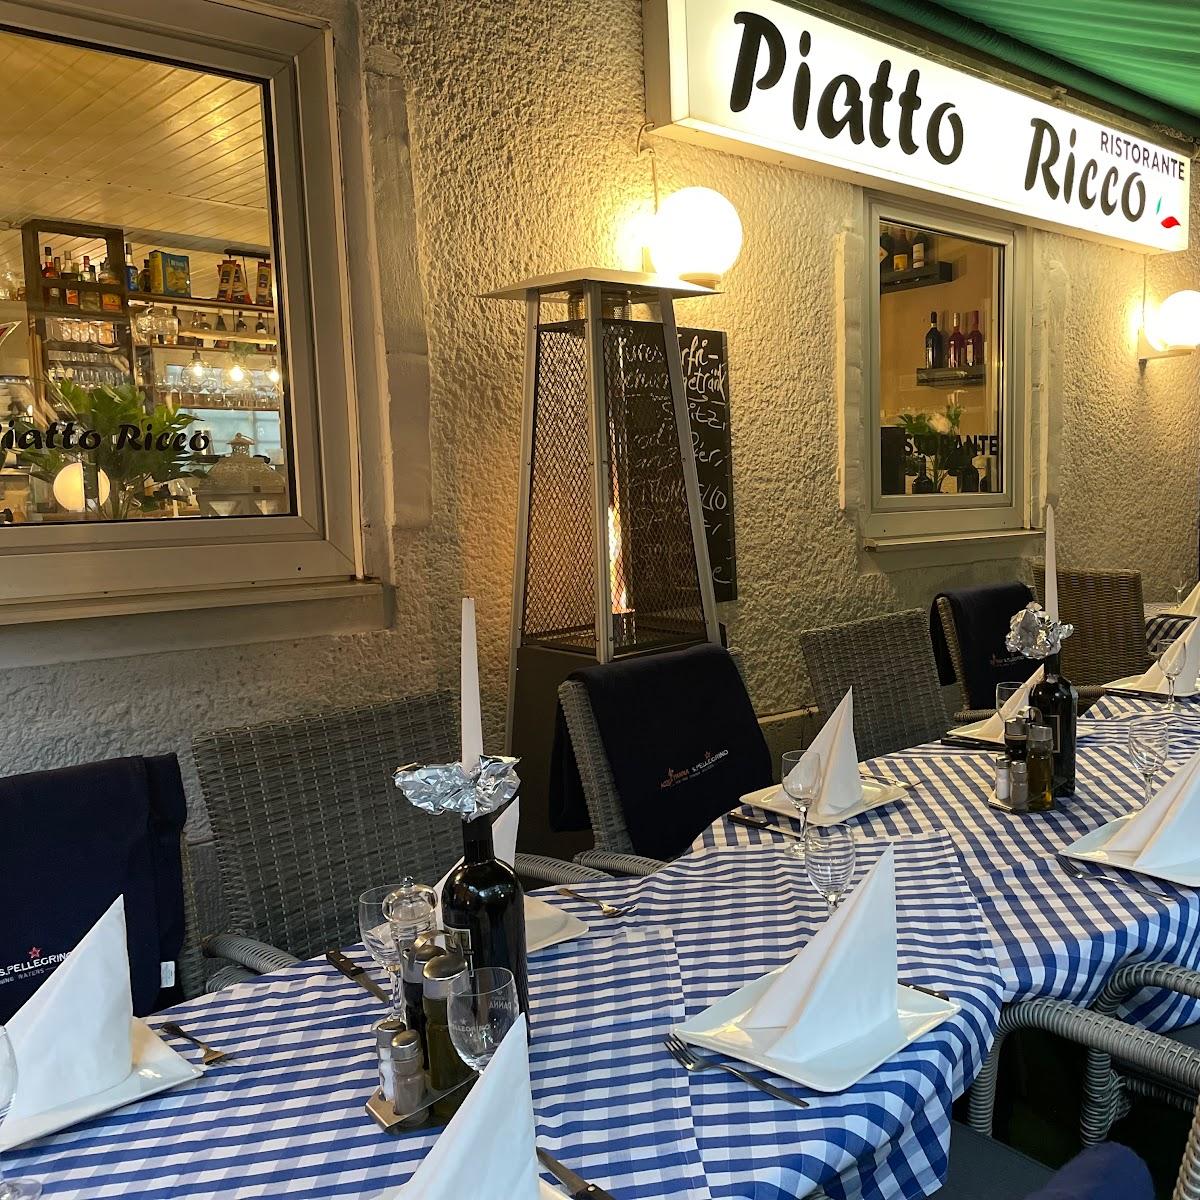 Restaurant "Piatto Ricco" in Berlin